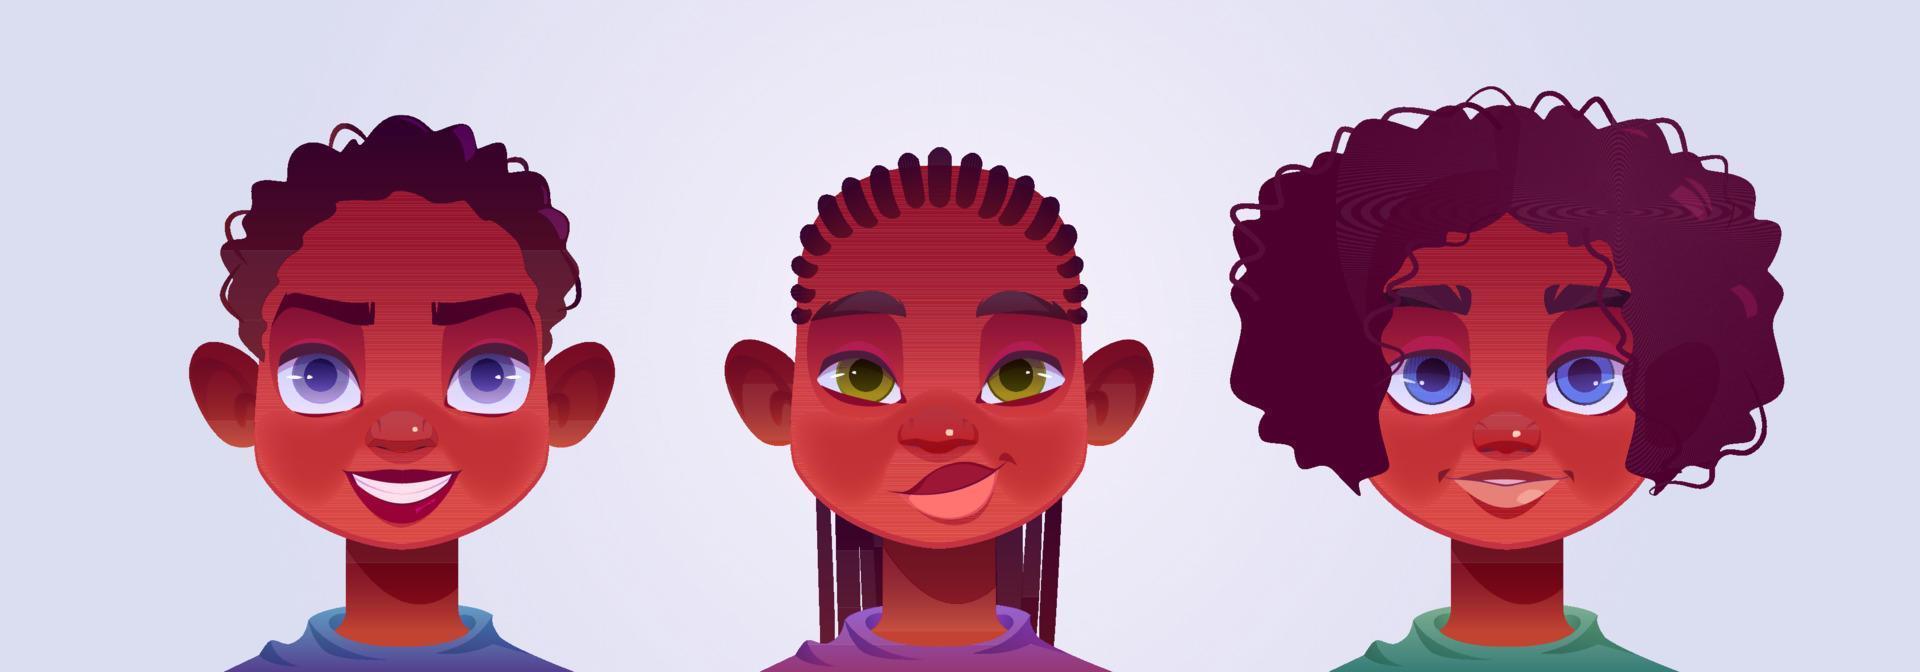 svart pojke avatarer, ung manlig tecken ansikten vektor